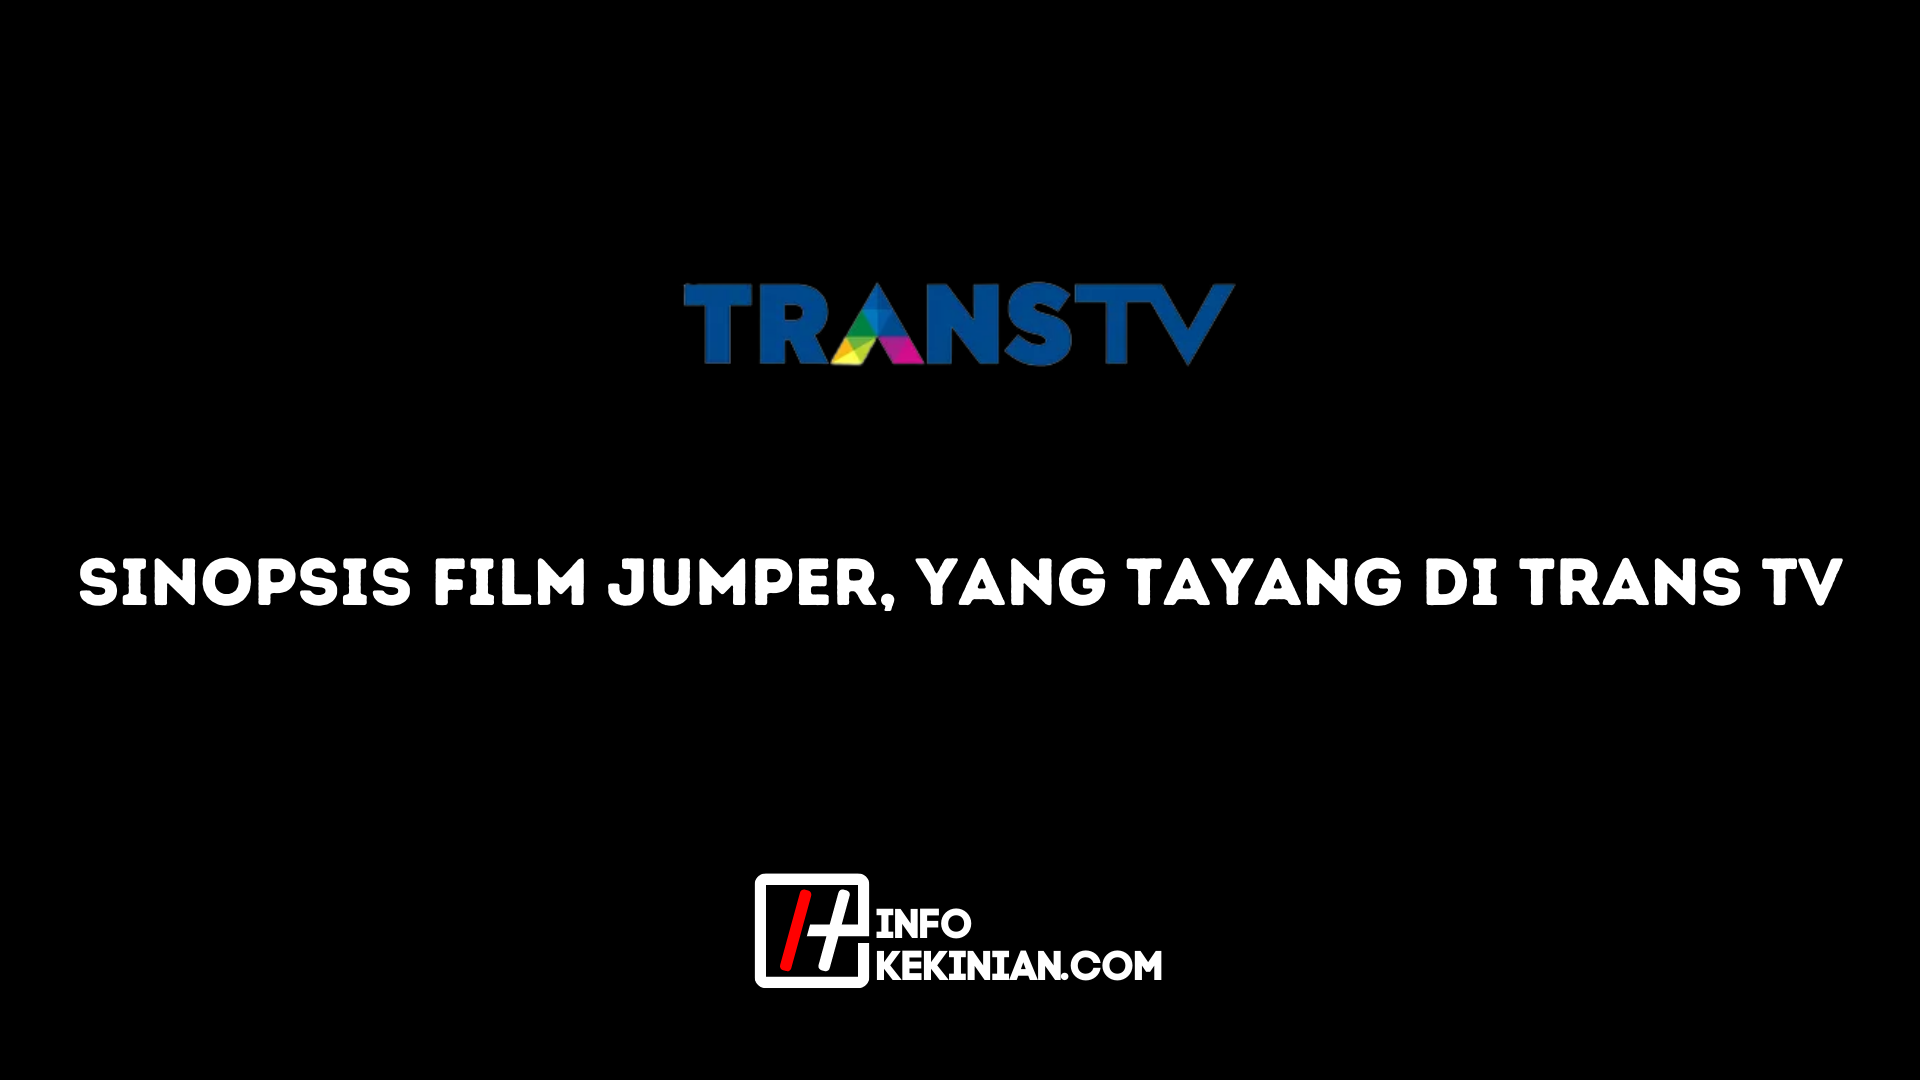 Streszczenie filmu Jumper, który jest emitowany w Trans Tv